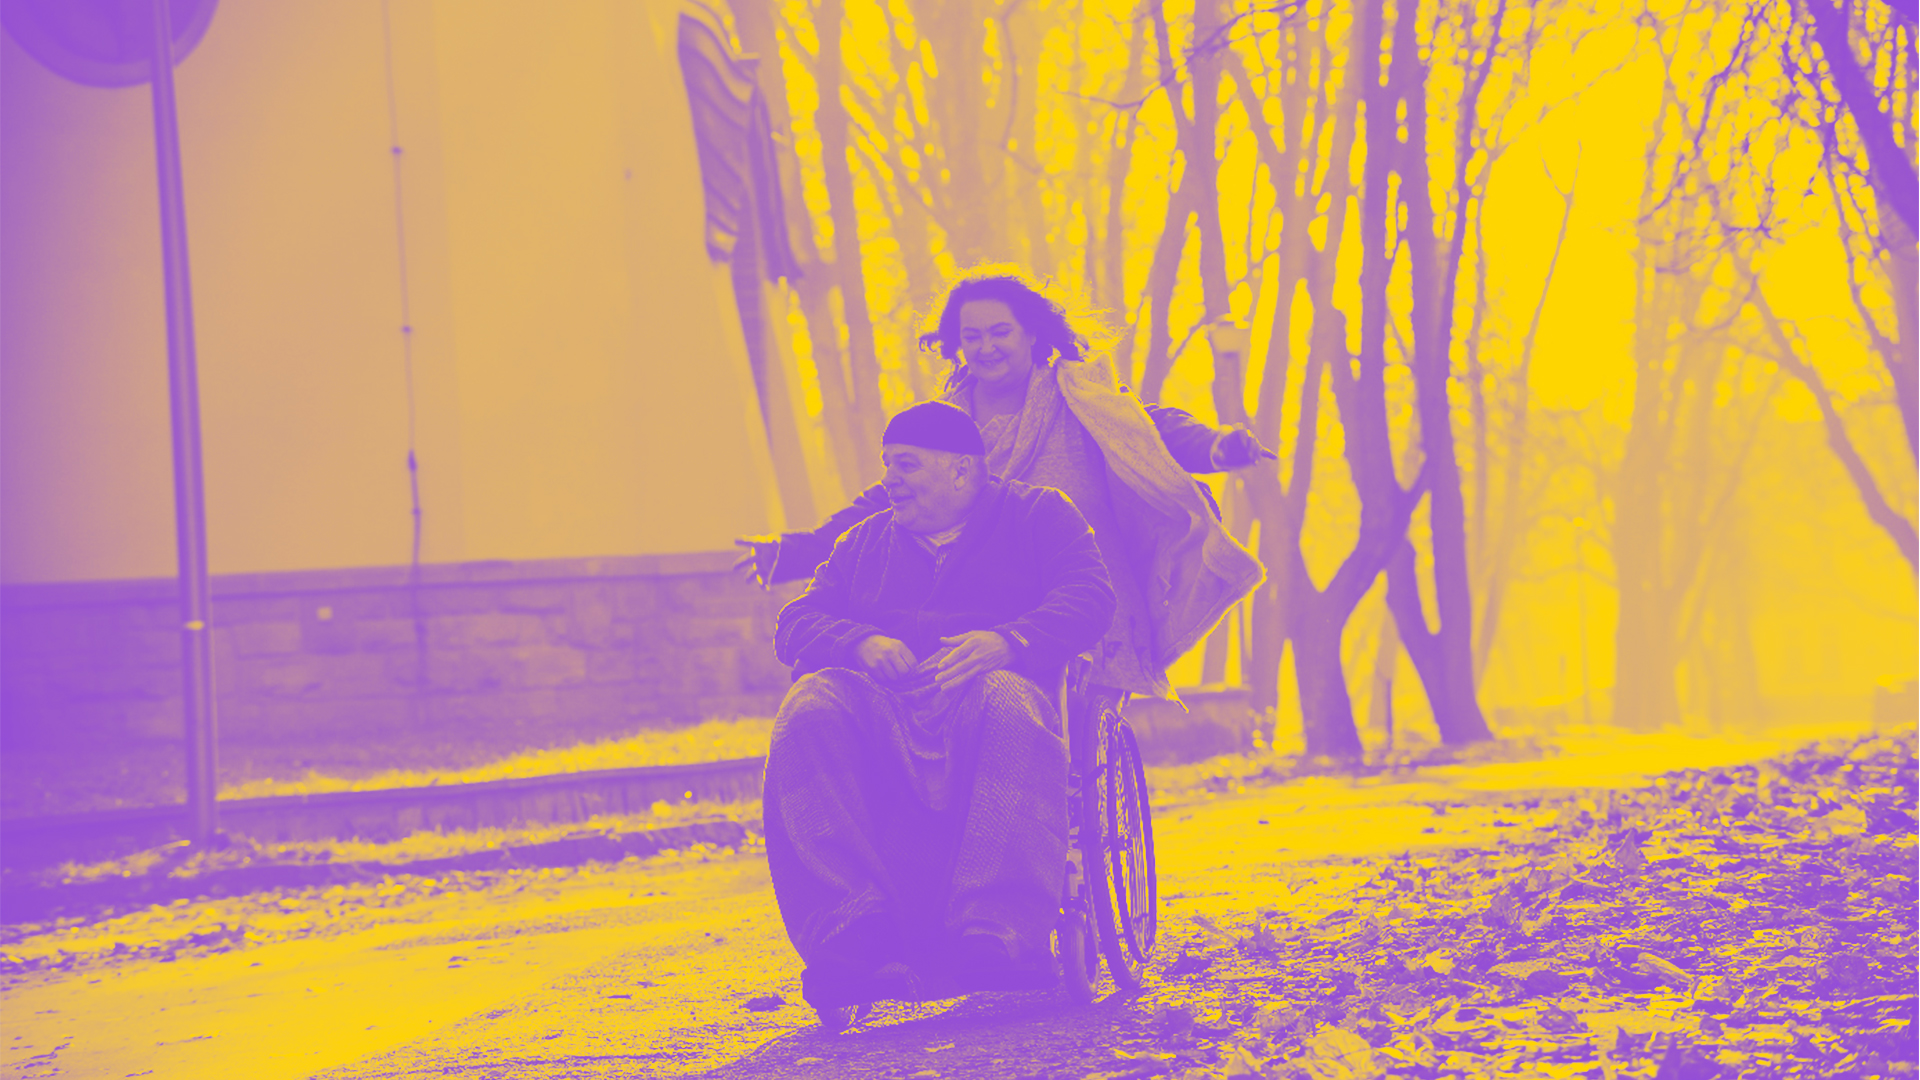 Mężczyzna siedzący na wózku inwalidzkim, za nim kobieta, która go prowadzi, jednak ręce ma rozłożone, nie trzyma wózka - zdjęcie w barwach fioletu i żółci